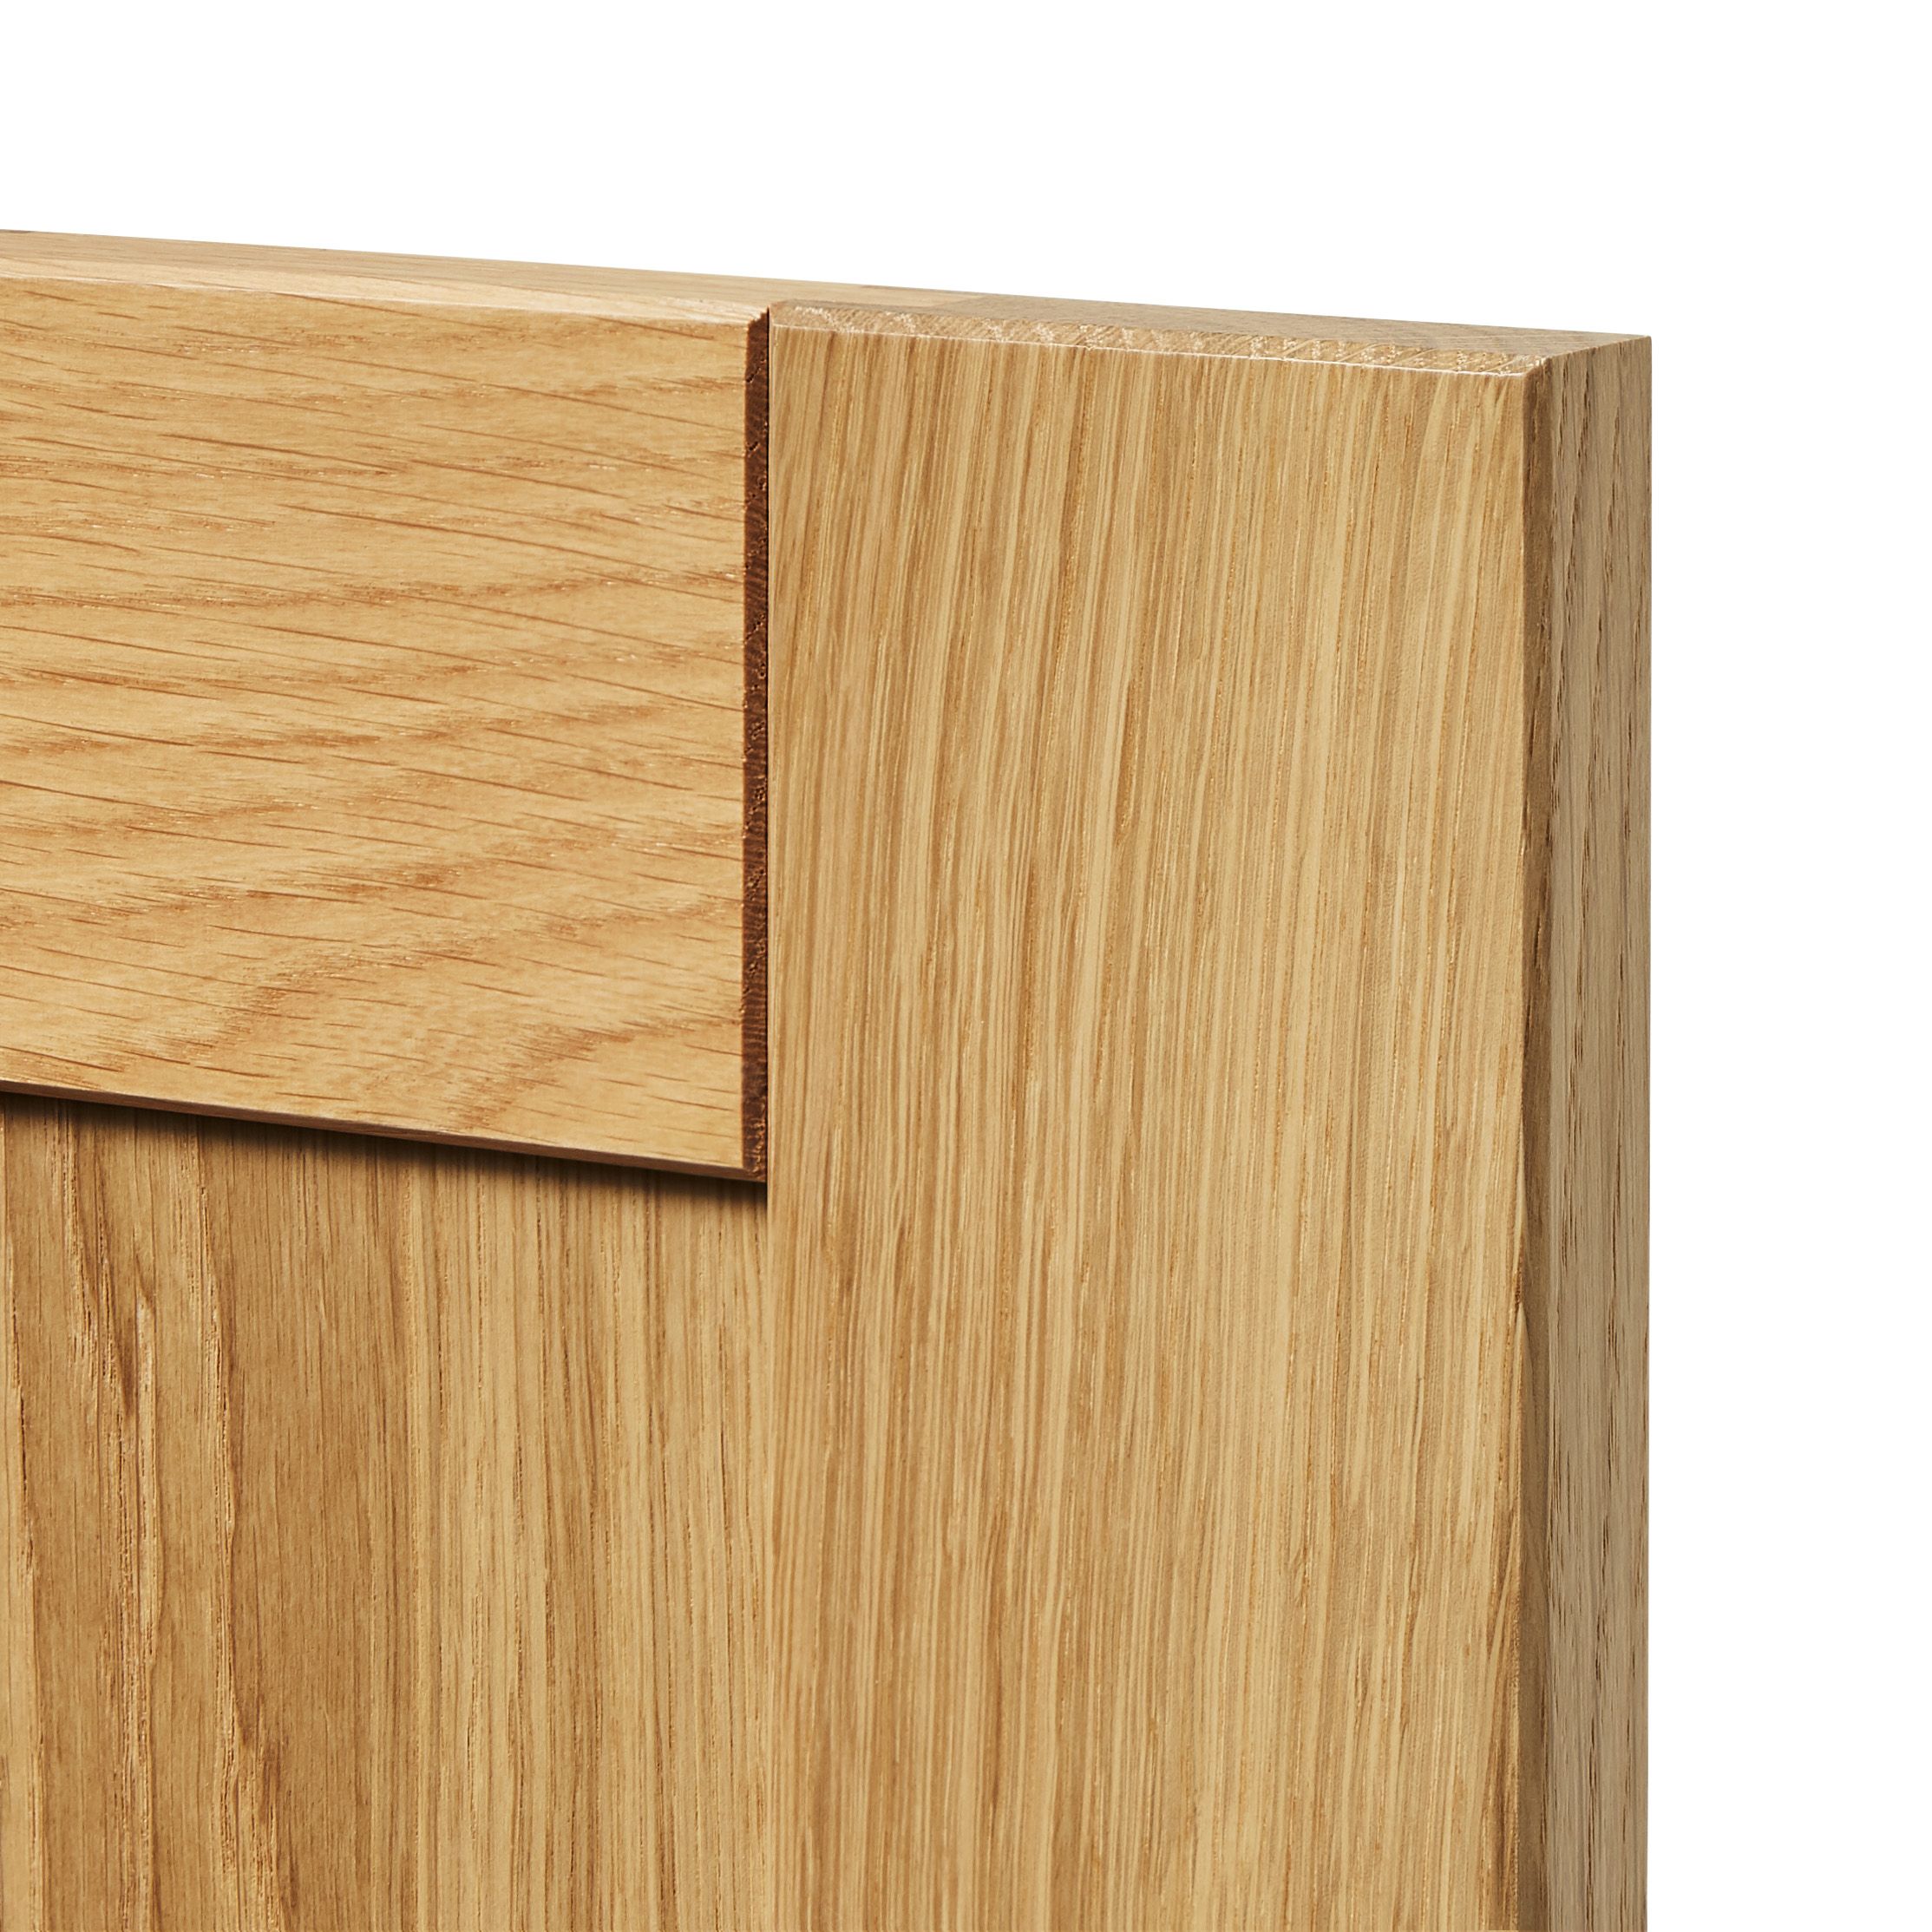 GoodHome Verbena Matt natural oak effect Drawer front, bridging door & bi fold door, (W)800mm (H)356mm (T)20mm